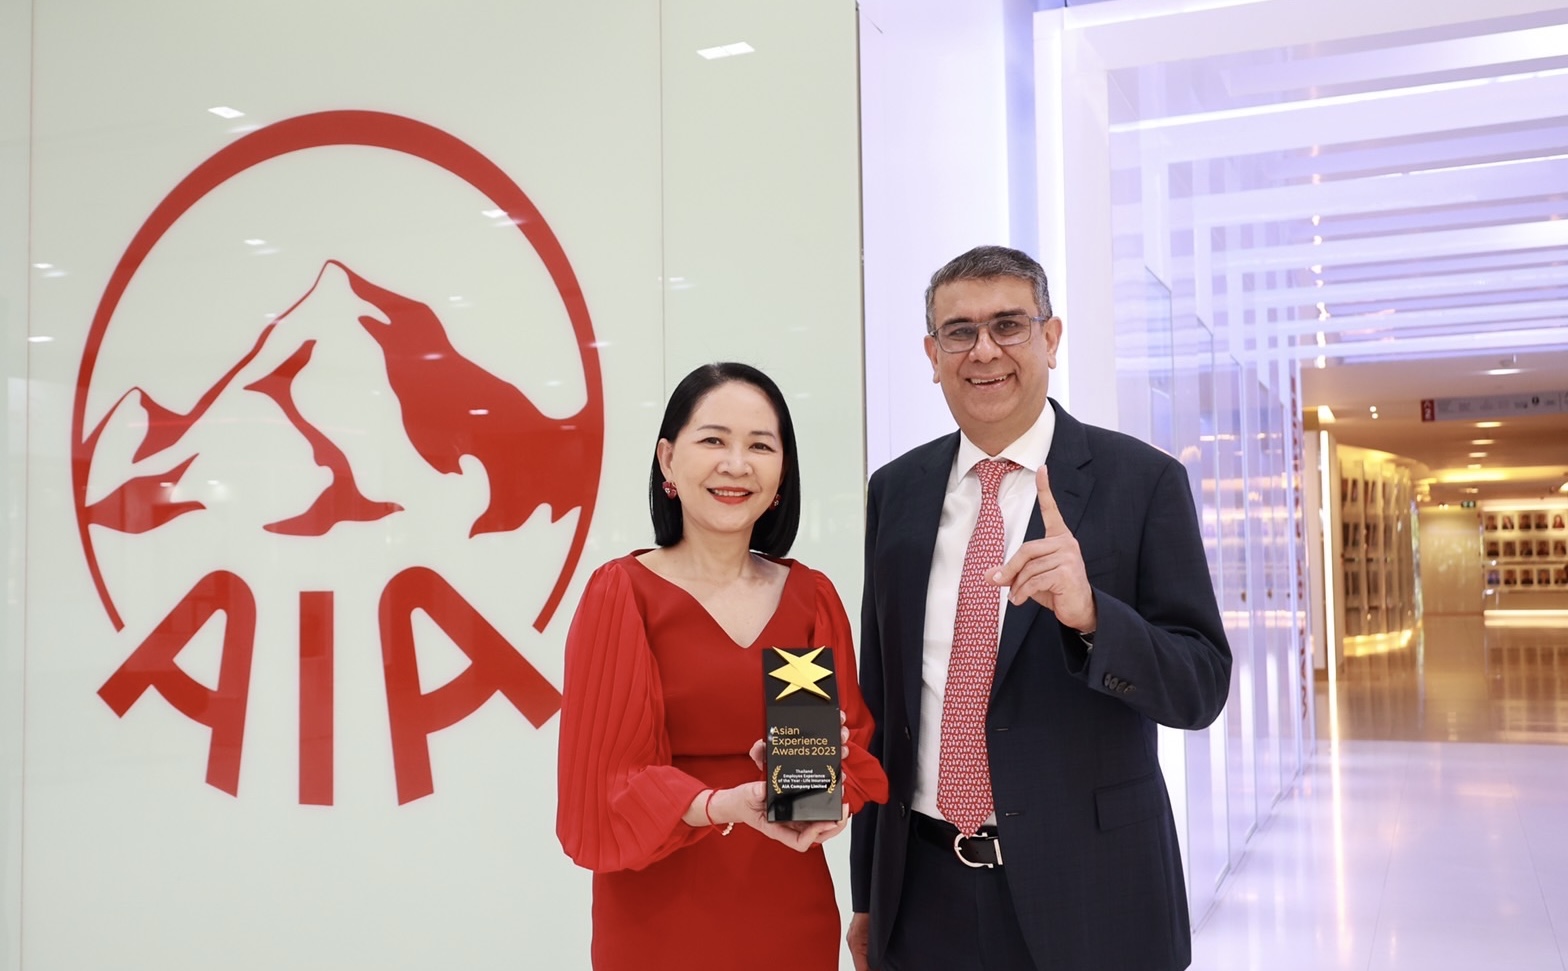 เอไอเอ ประเทศไทย รับรางวัล “Thailand’s Employee Experience of the Year” ประเภทธุรกิจประกันชีวิต จากงาน Asian Experience Awards 2023